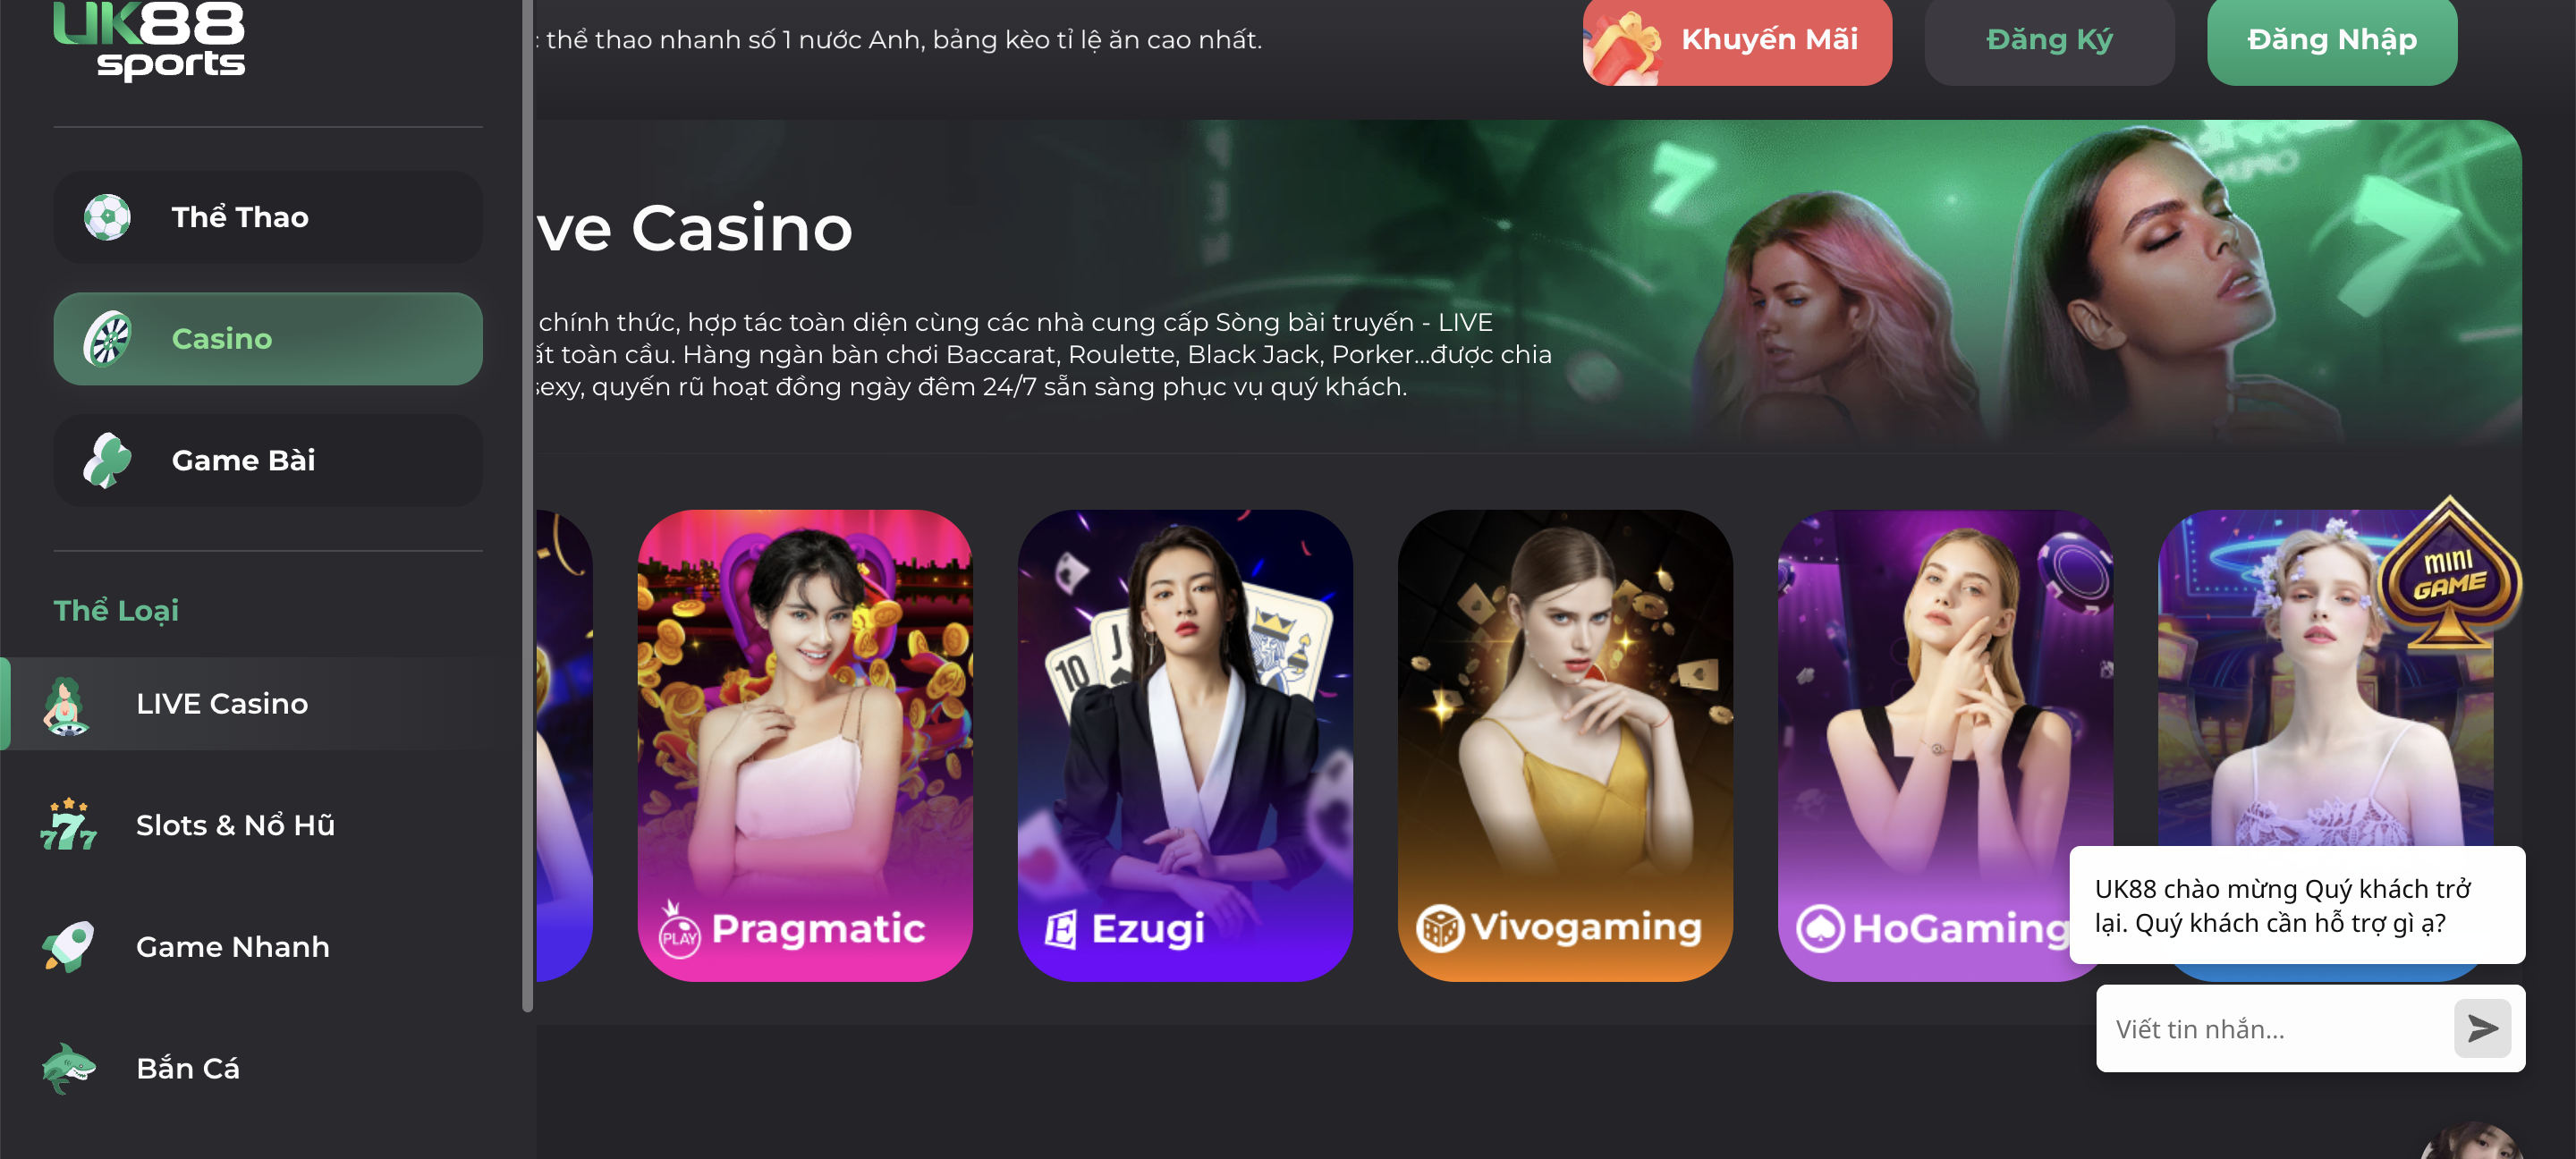 Live casino là một danh mục bao gồm các tựa game bài online nổi tiếng